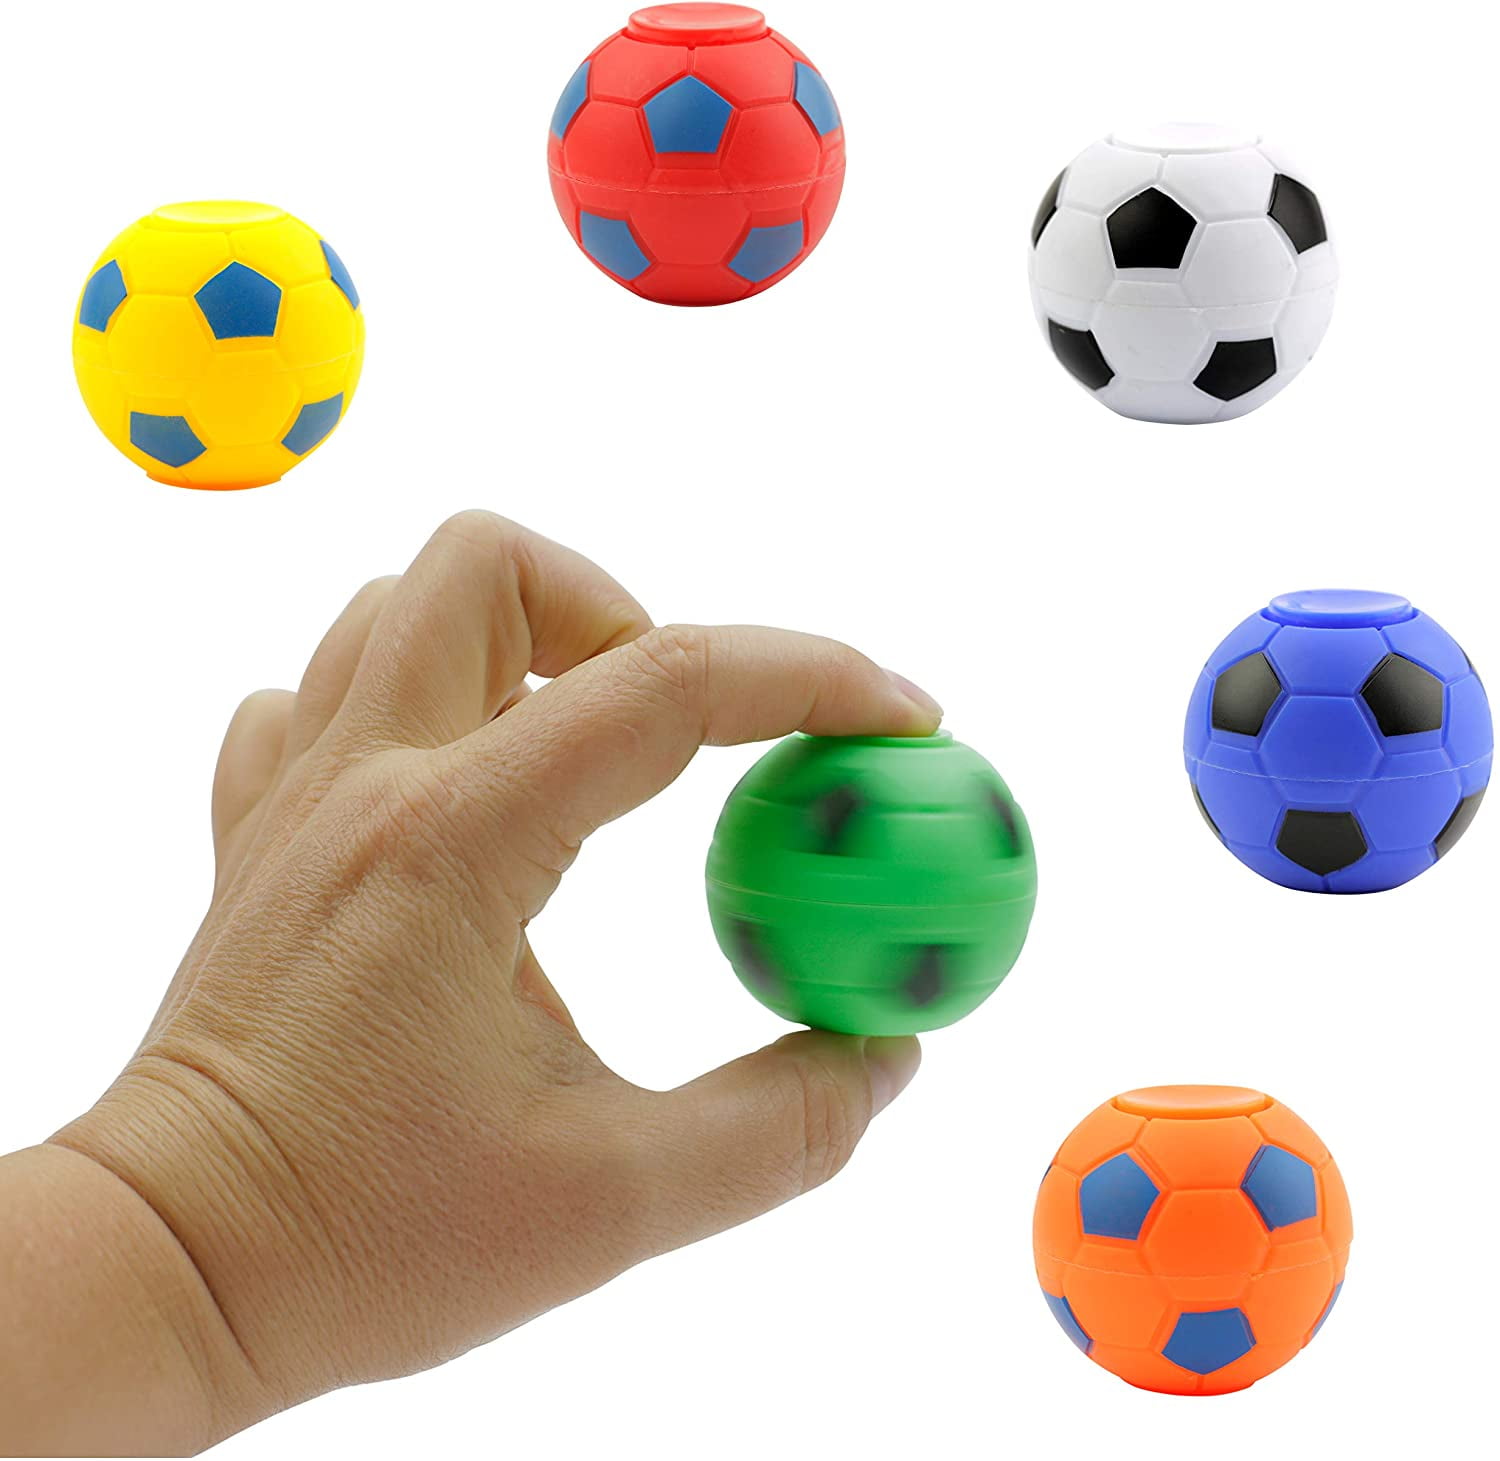 Sicilien Igangværende kolbøtte 1.4 inch Fidget Spinner Balls - 25 pcs Fidget Spinner Pack - Soccer Fidget  Spinners for Kids - Hand Spinner for Kids - Toy Gifts for Kids - Walmart.com